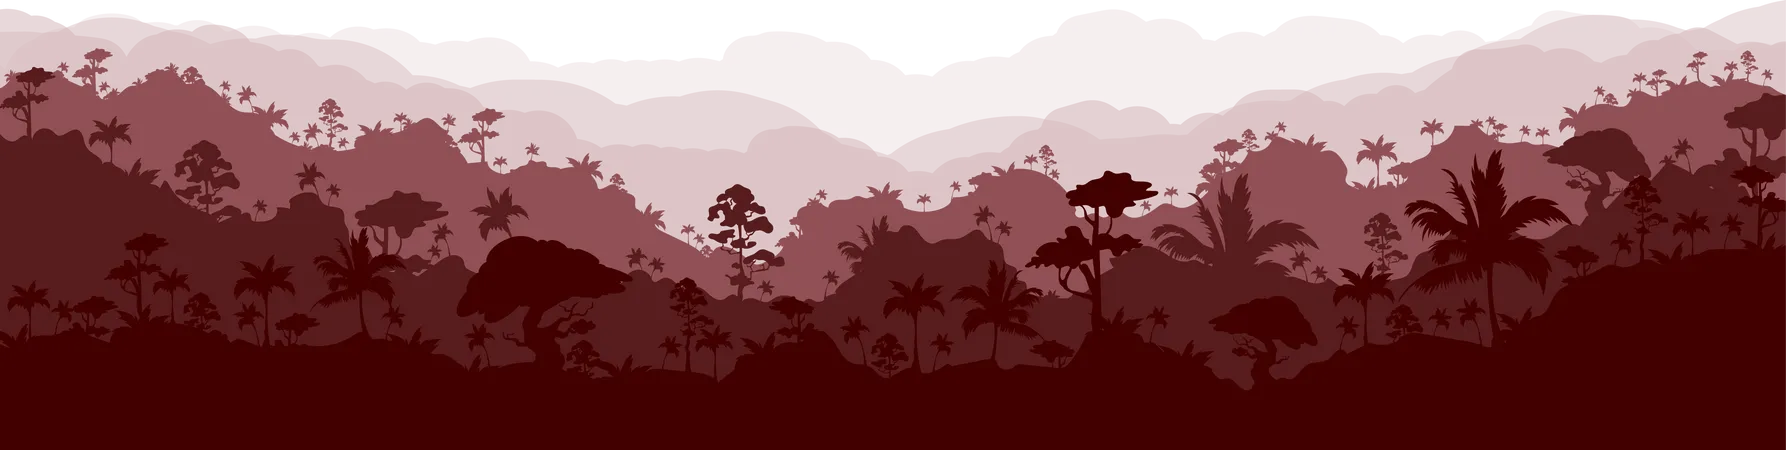 Paisaje de bosque marrón  Ilustración